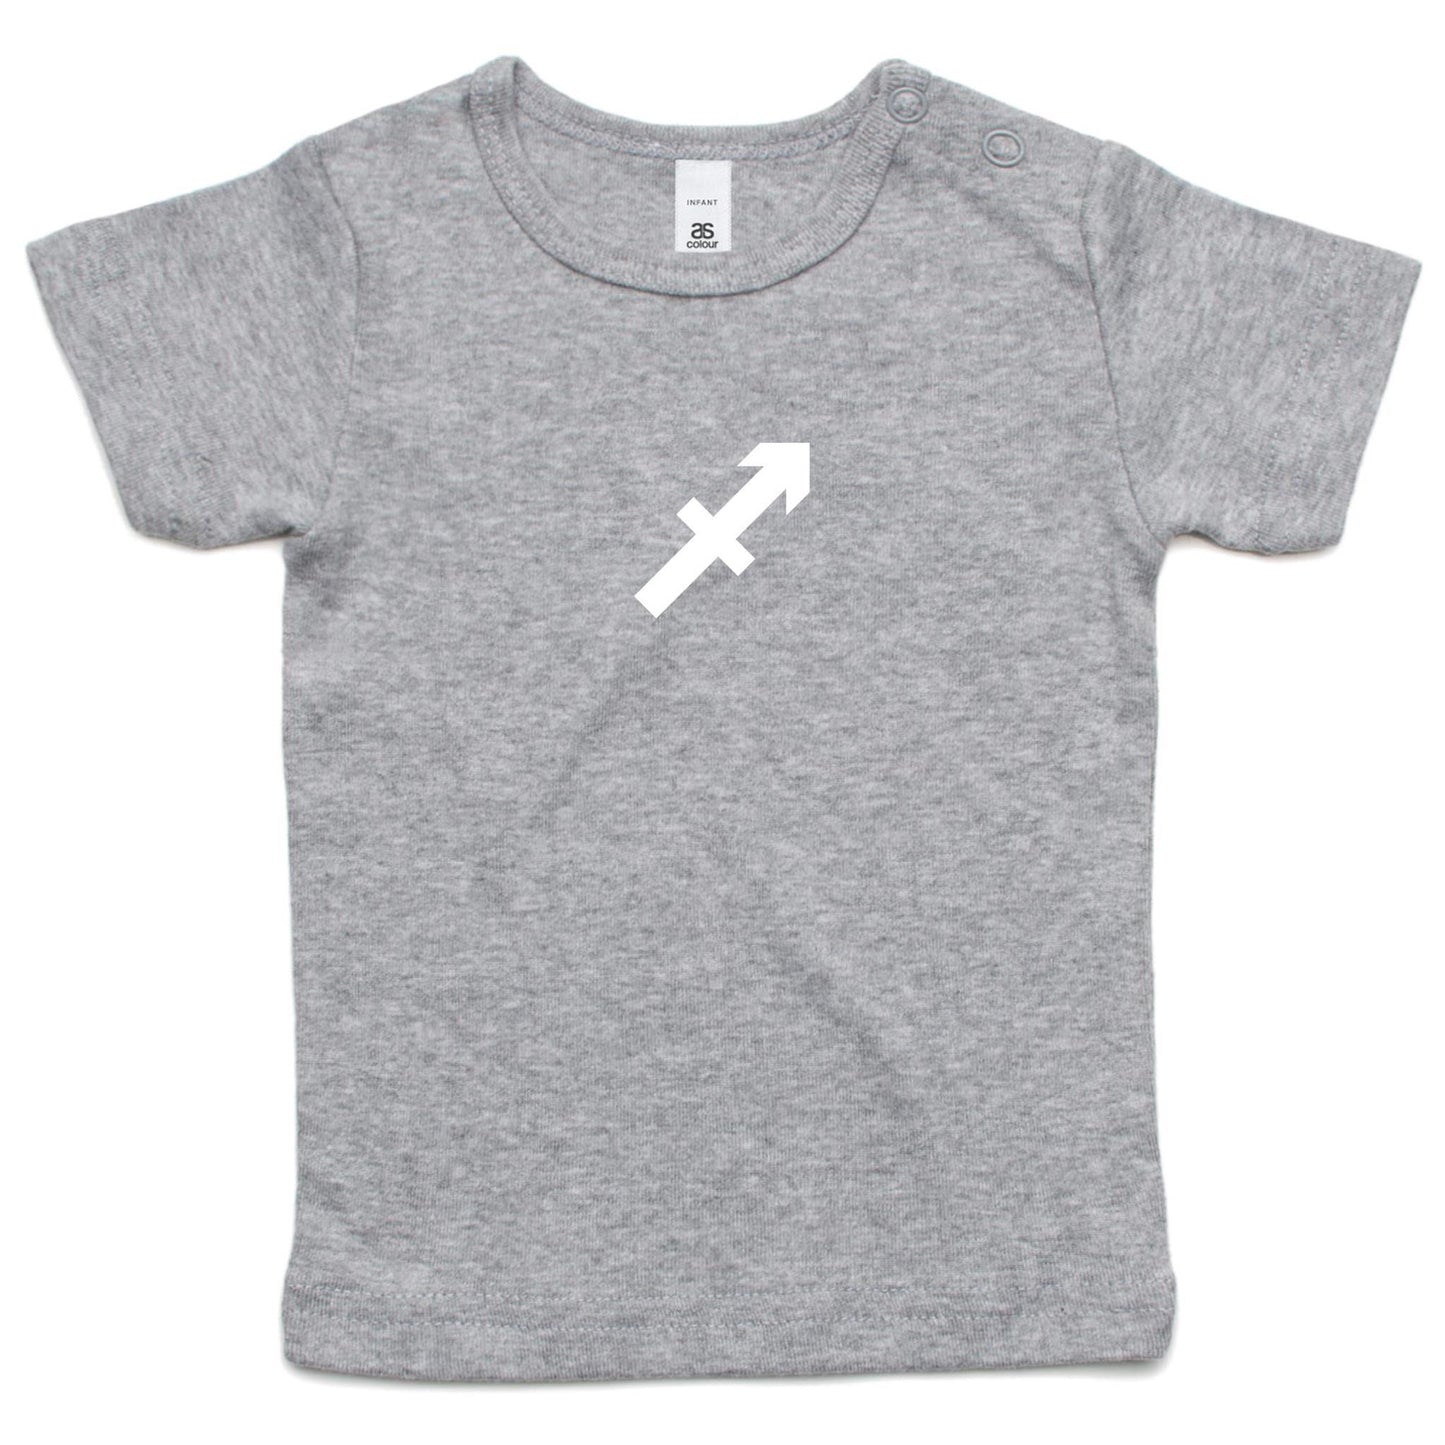 Sagittarius T Shirts for Babies